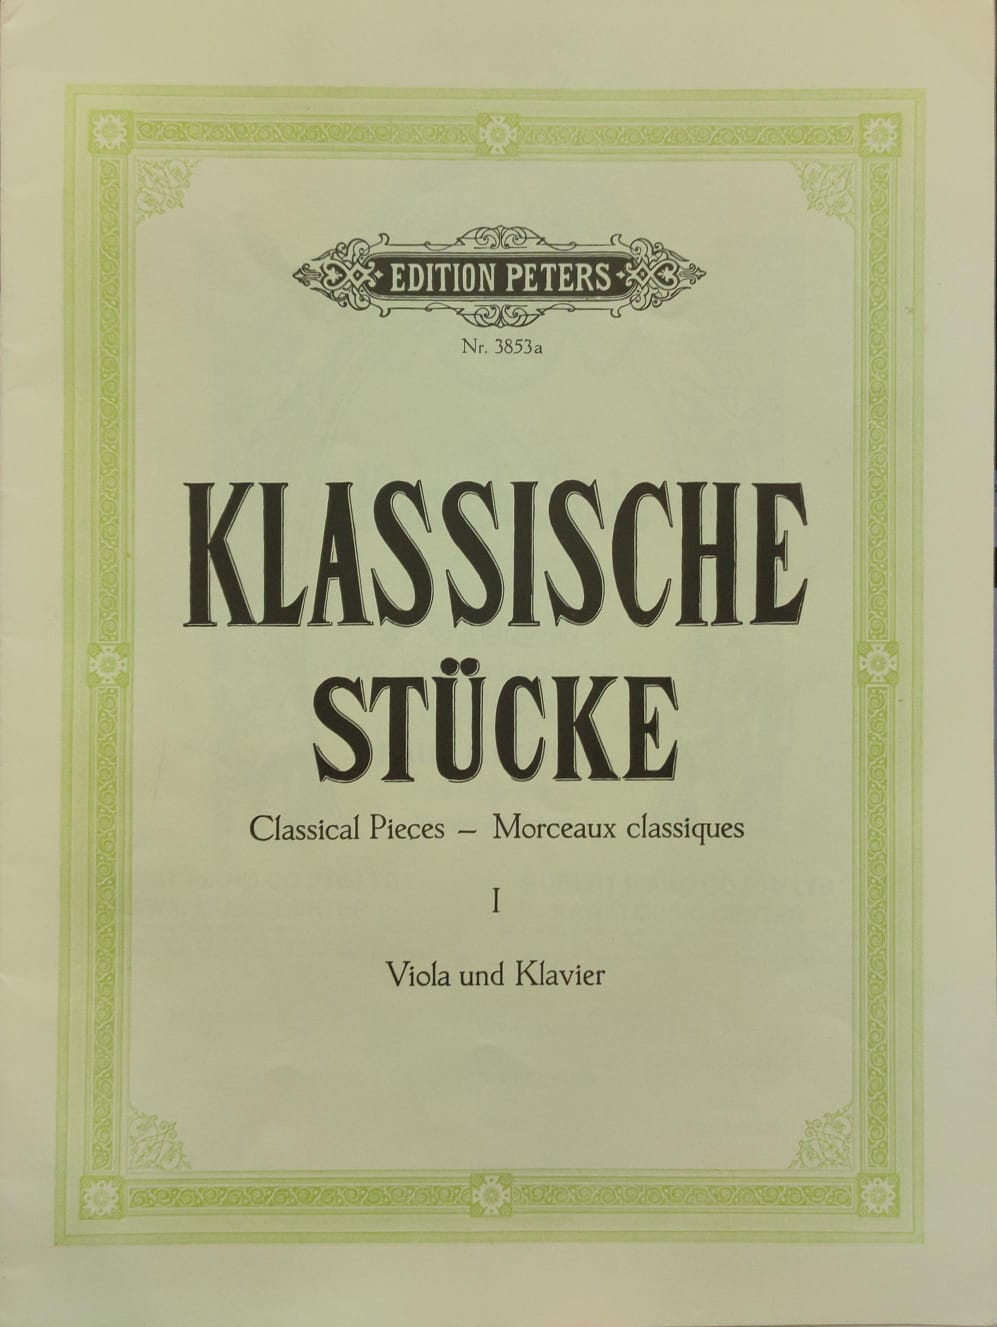 Klassische Stucke: Classical Pieces Vol. 1